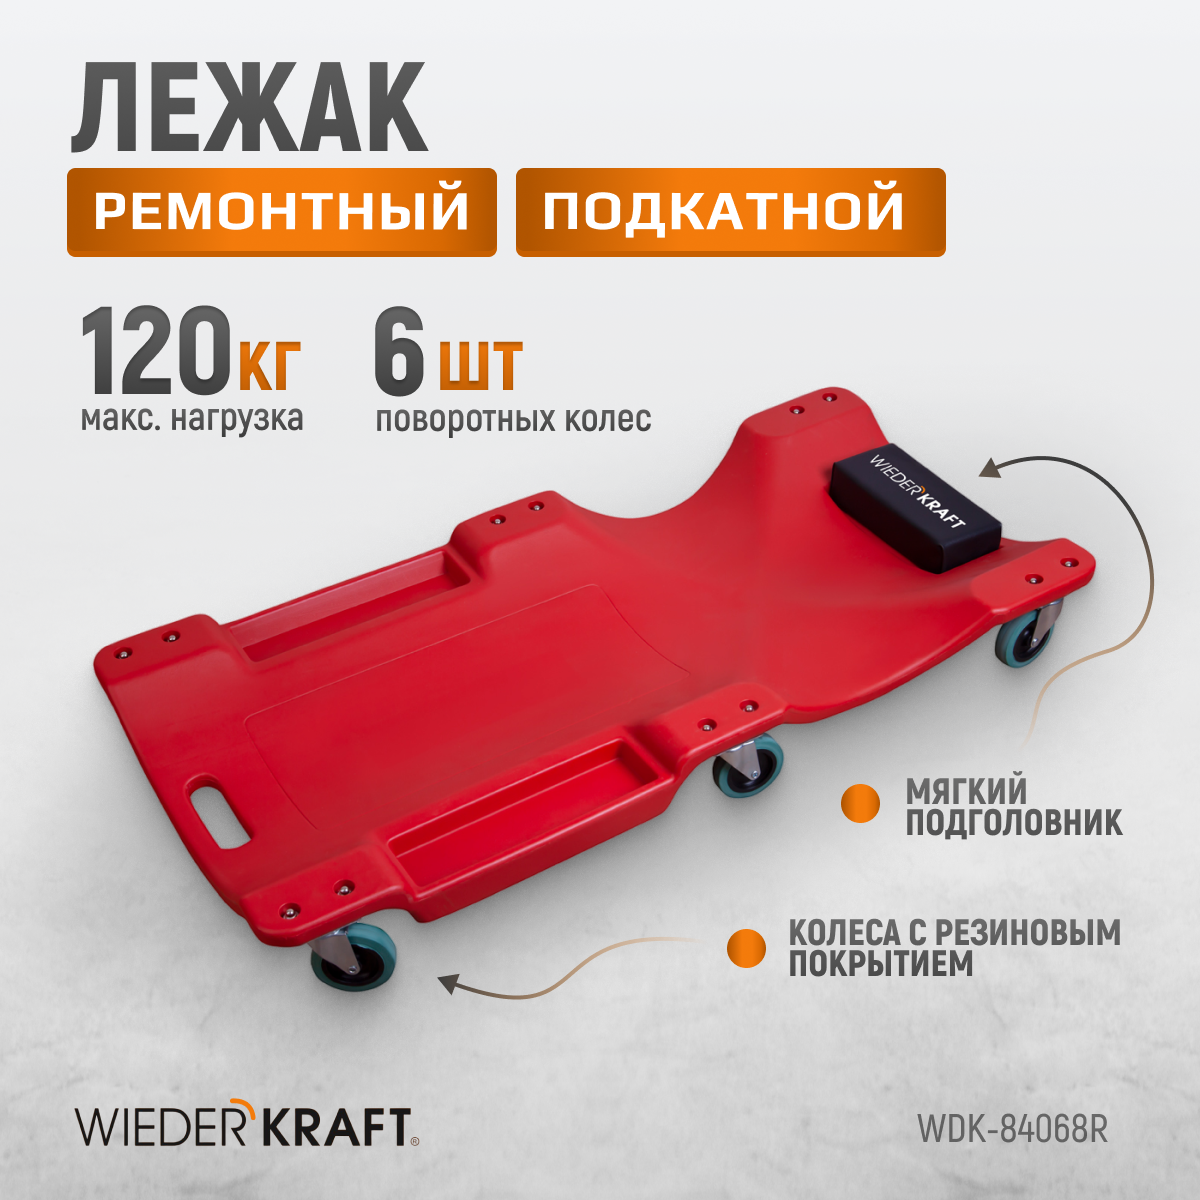 Лежак пластиковый подкатной, 6 поворотных колес, мягкое изгловье WIEDERKRAFT WDK-84068R